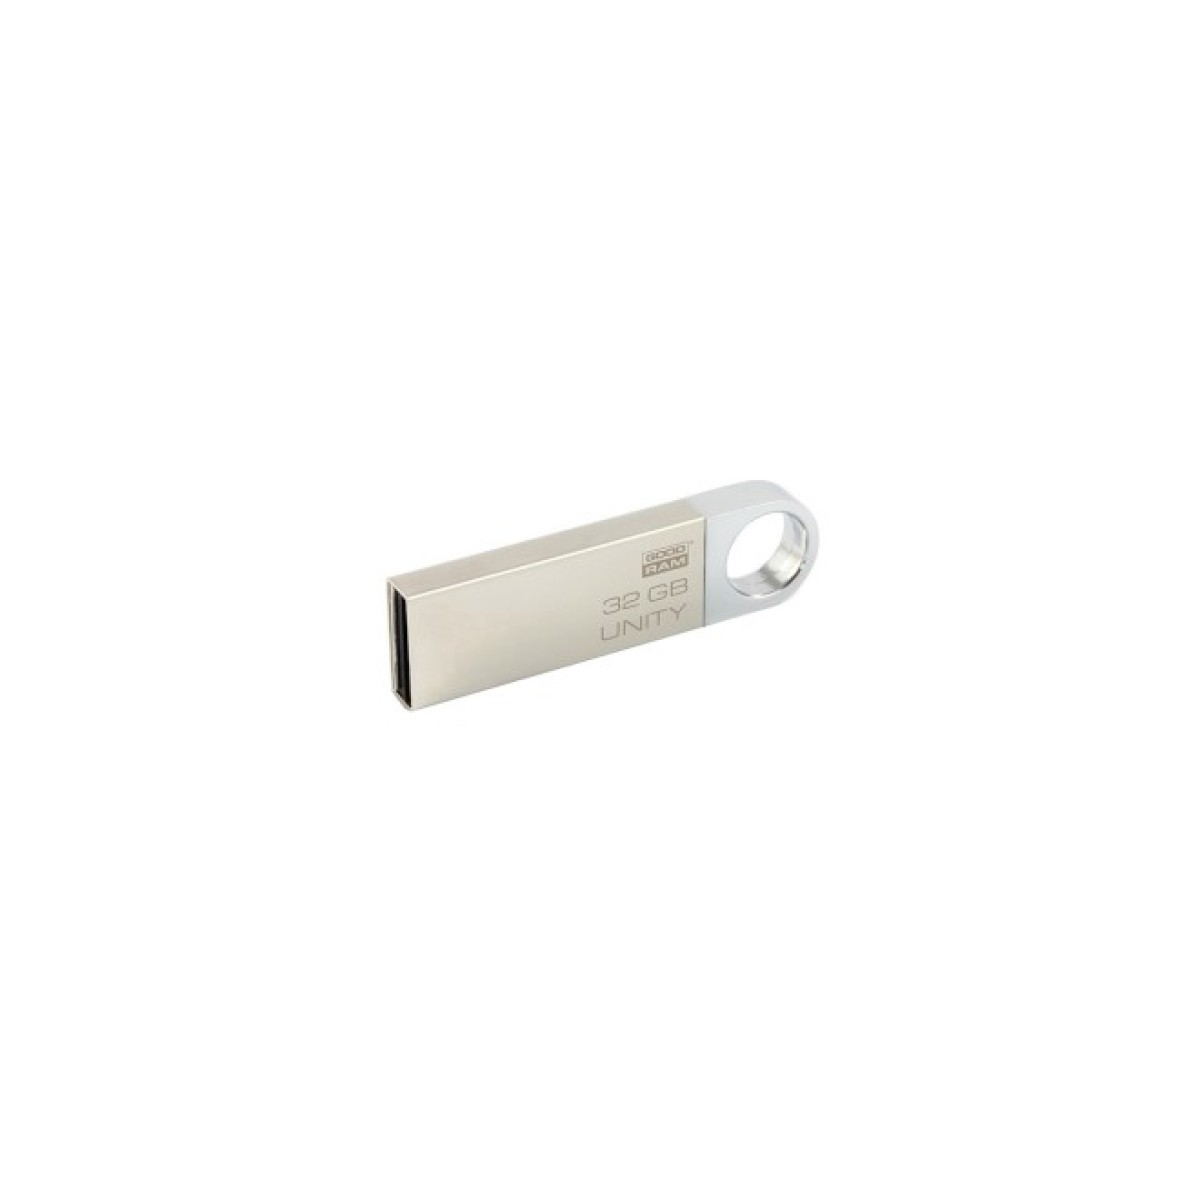 USB флеш накопитель Goodram 32GB UUN2 (Unity) Silver USB 2.0 (UUN2-0320S0R11) 256_256.jpg